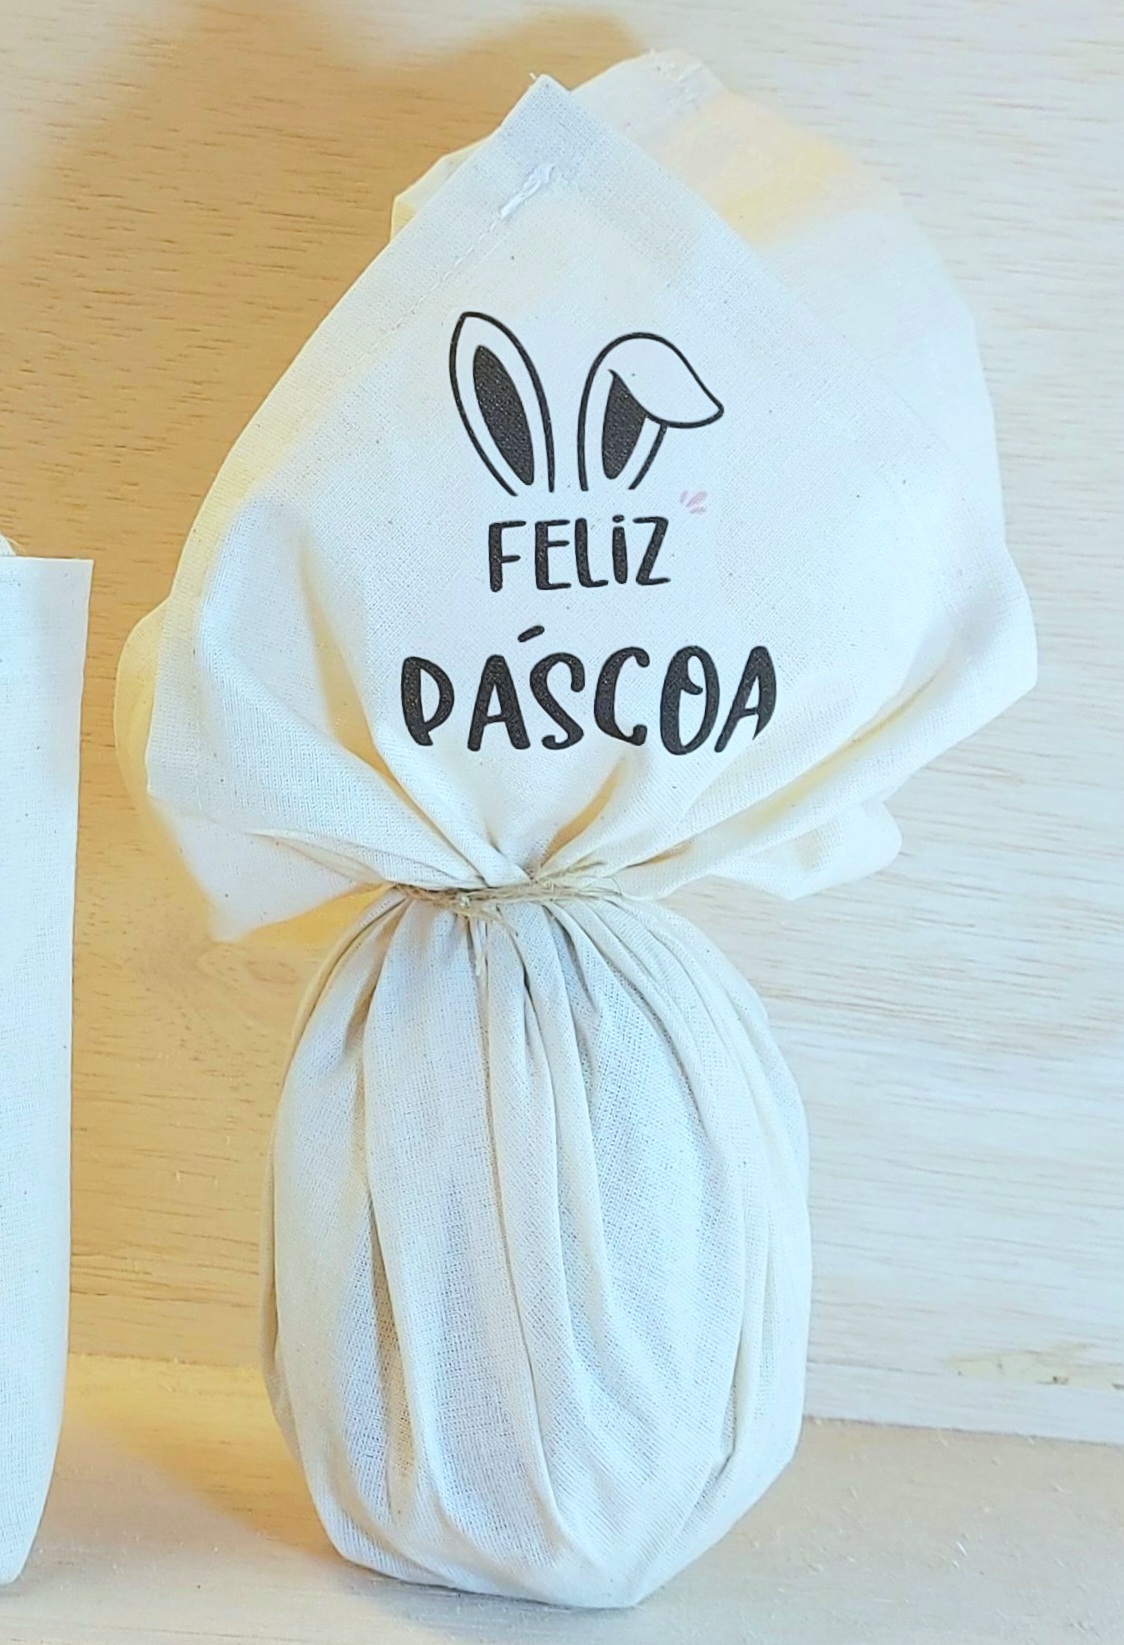 Embrulho de Páscoa Orelhinhas Feliz Páscoa - Algodão Cru - Personalizado - Embalagem para Ovo de Páscoa